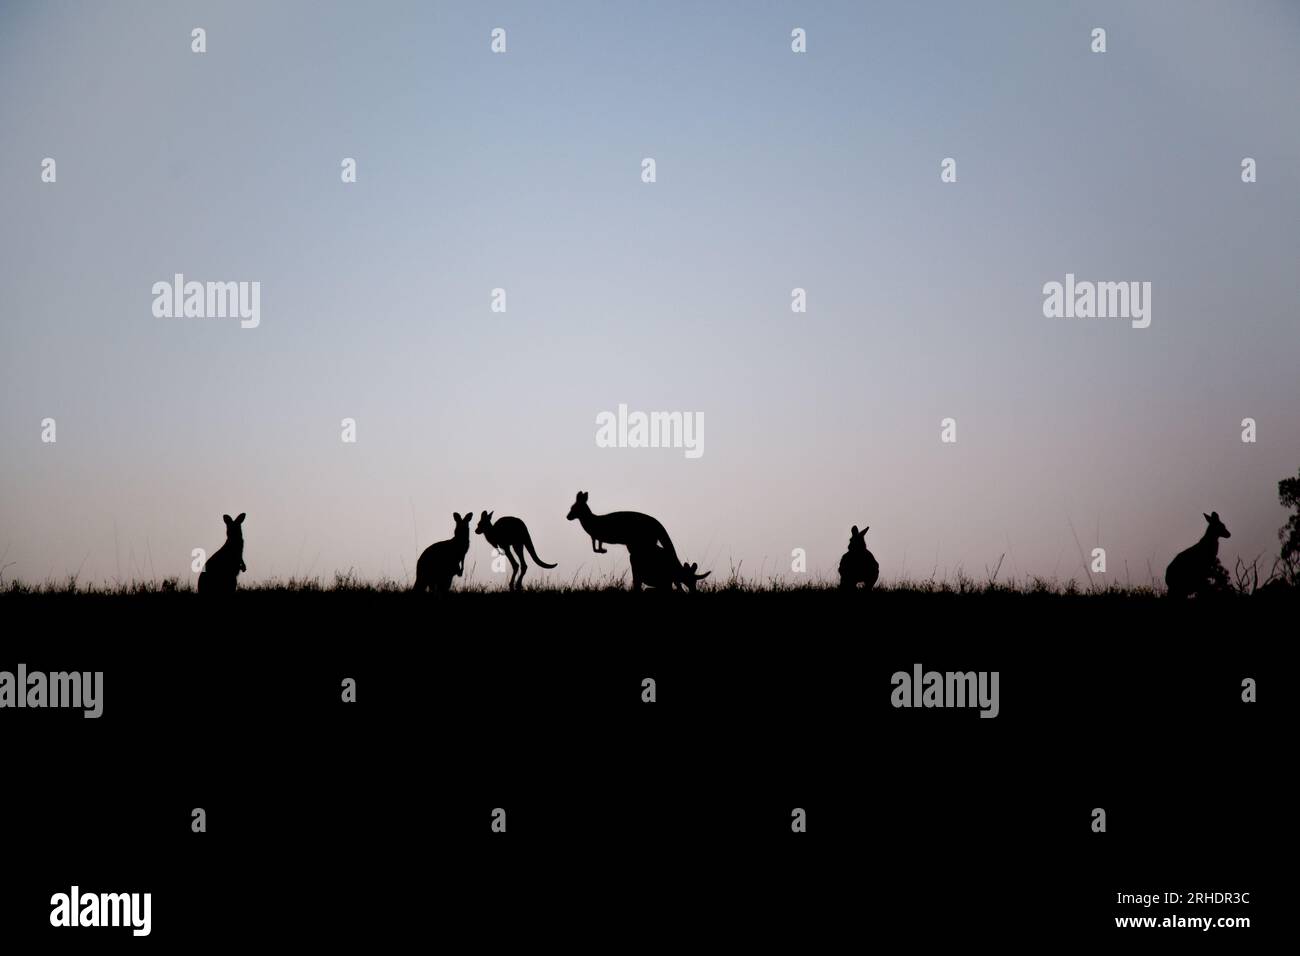 Die Silhouette australischer Kängurus, die in der Abenddämmerung im australischen Fahrerlager des Landes über einen Hügel springen Stockfoto